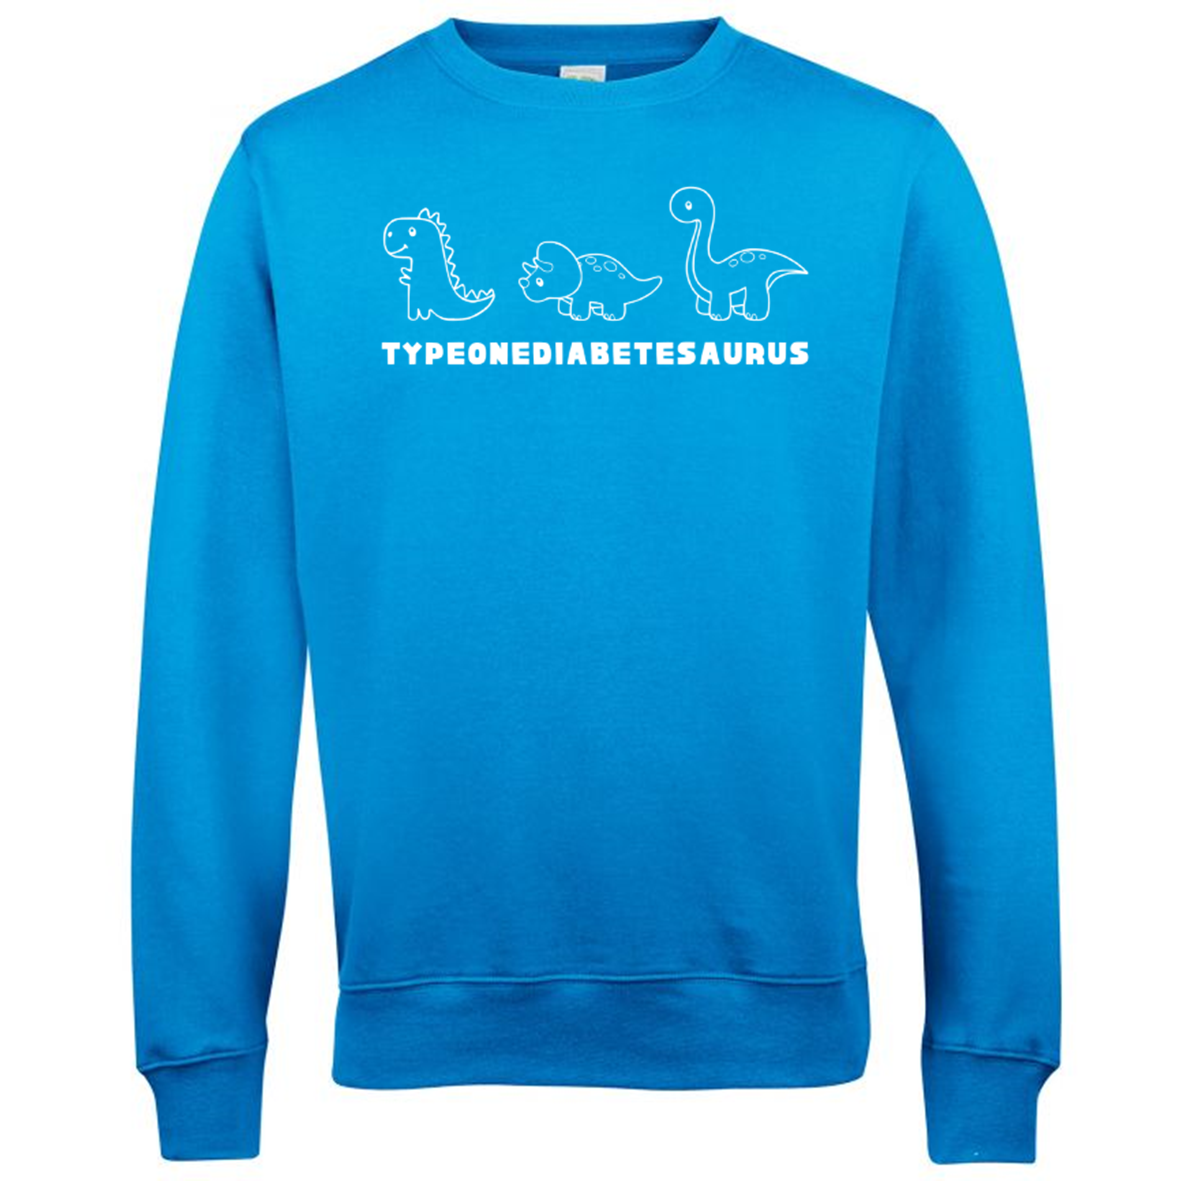 Typeonediabetesaurus Sweatshirt